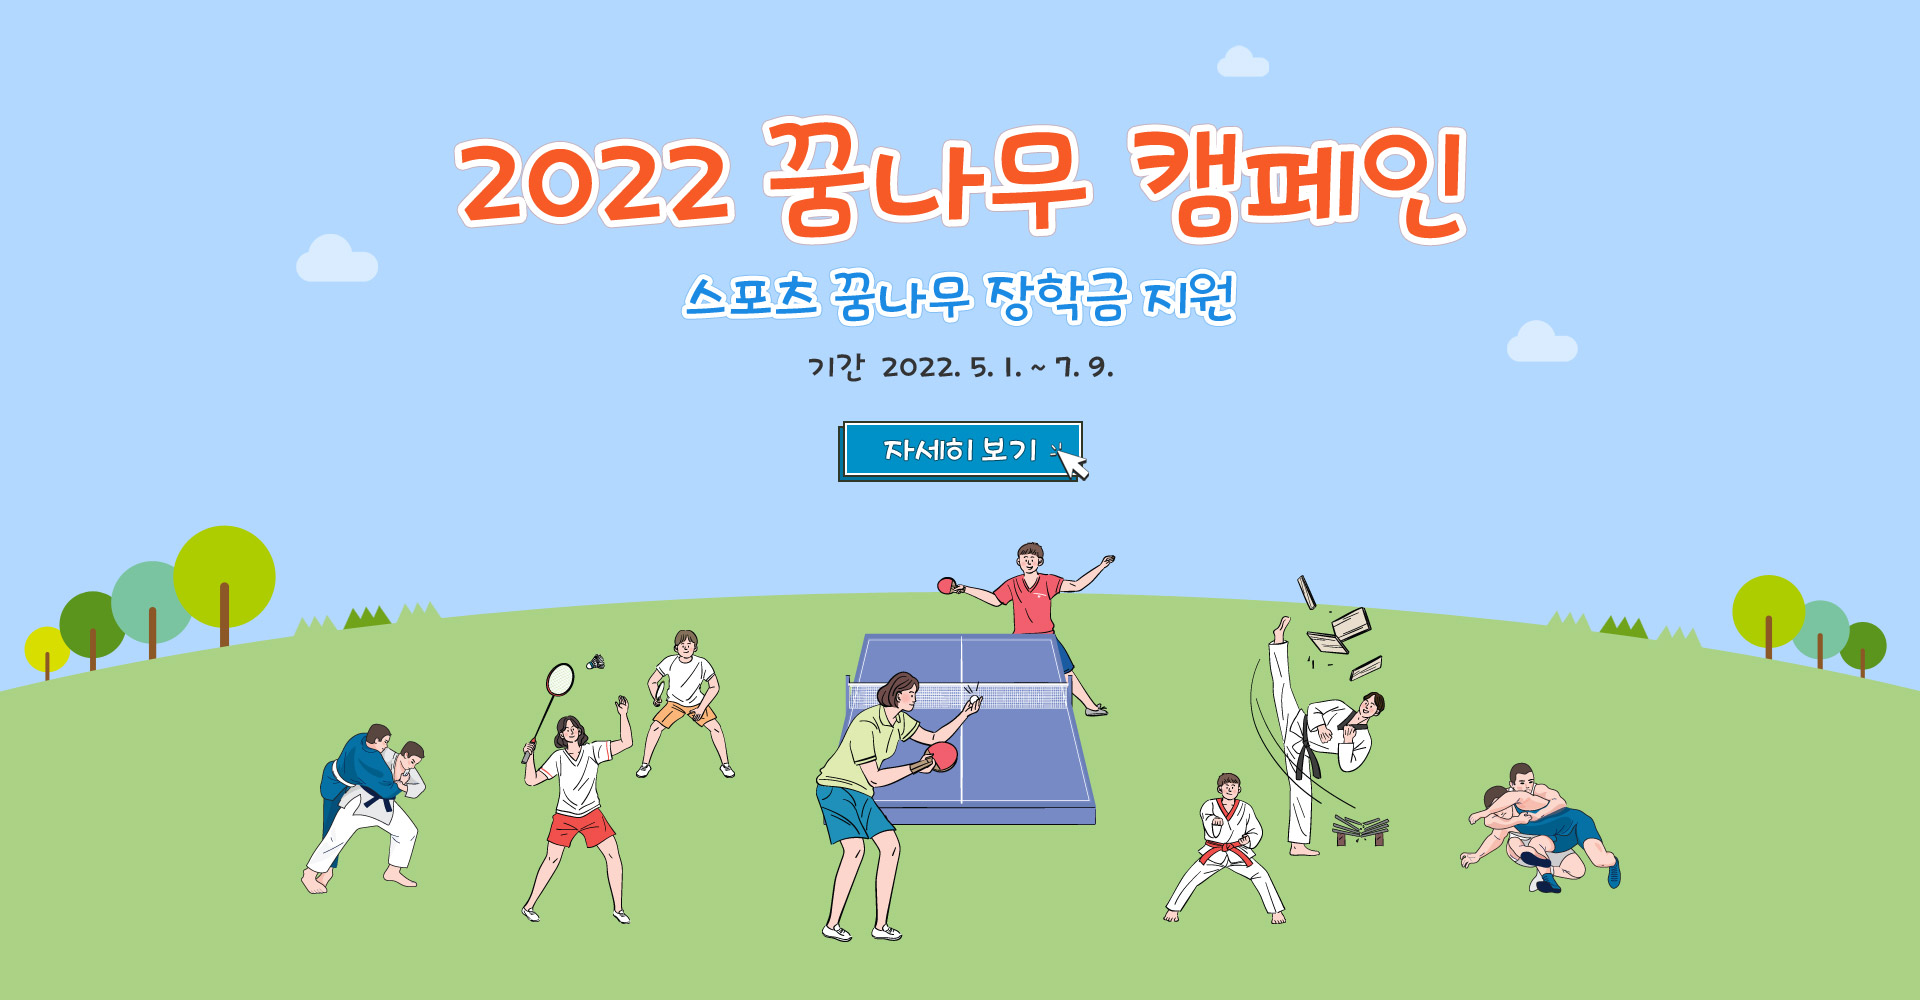 새창-2022 꿈나무 캠페인 스포츠 꿈나무 장학금 지원 기간 2022.5.1. ~ 7.9.